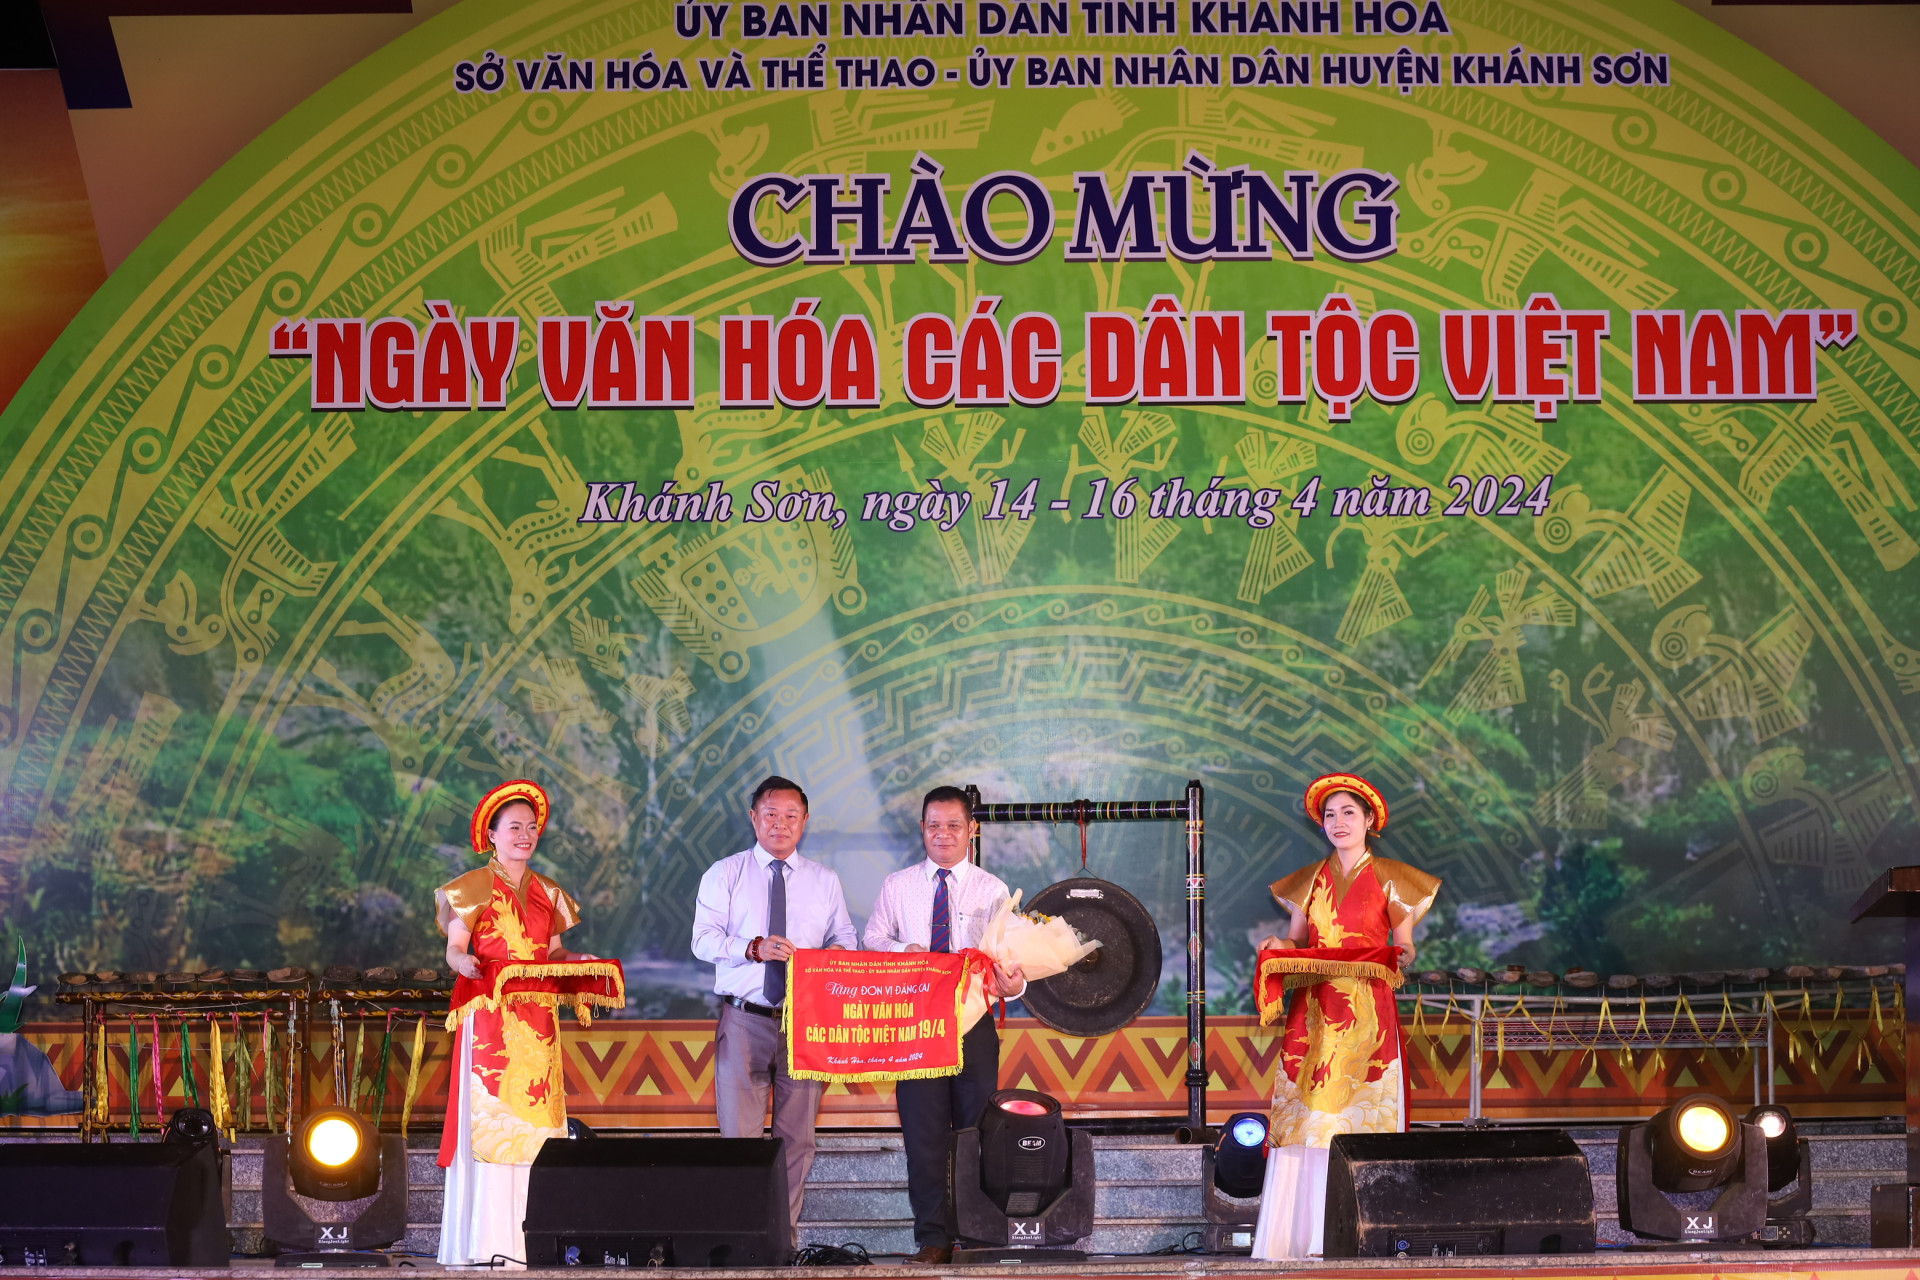 Lãnh đạo Sở Văn hóa và Thể thao trao cờ cho lãnh đạo huyện Khánh Sơn - địa phương đăng cai tổ chức Ngày Văn hóa các dân tộc Việt Nam trên địa bàn tỉnh năm 2024.